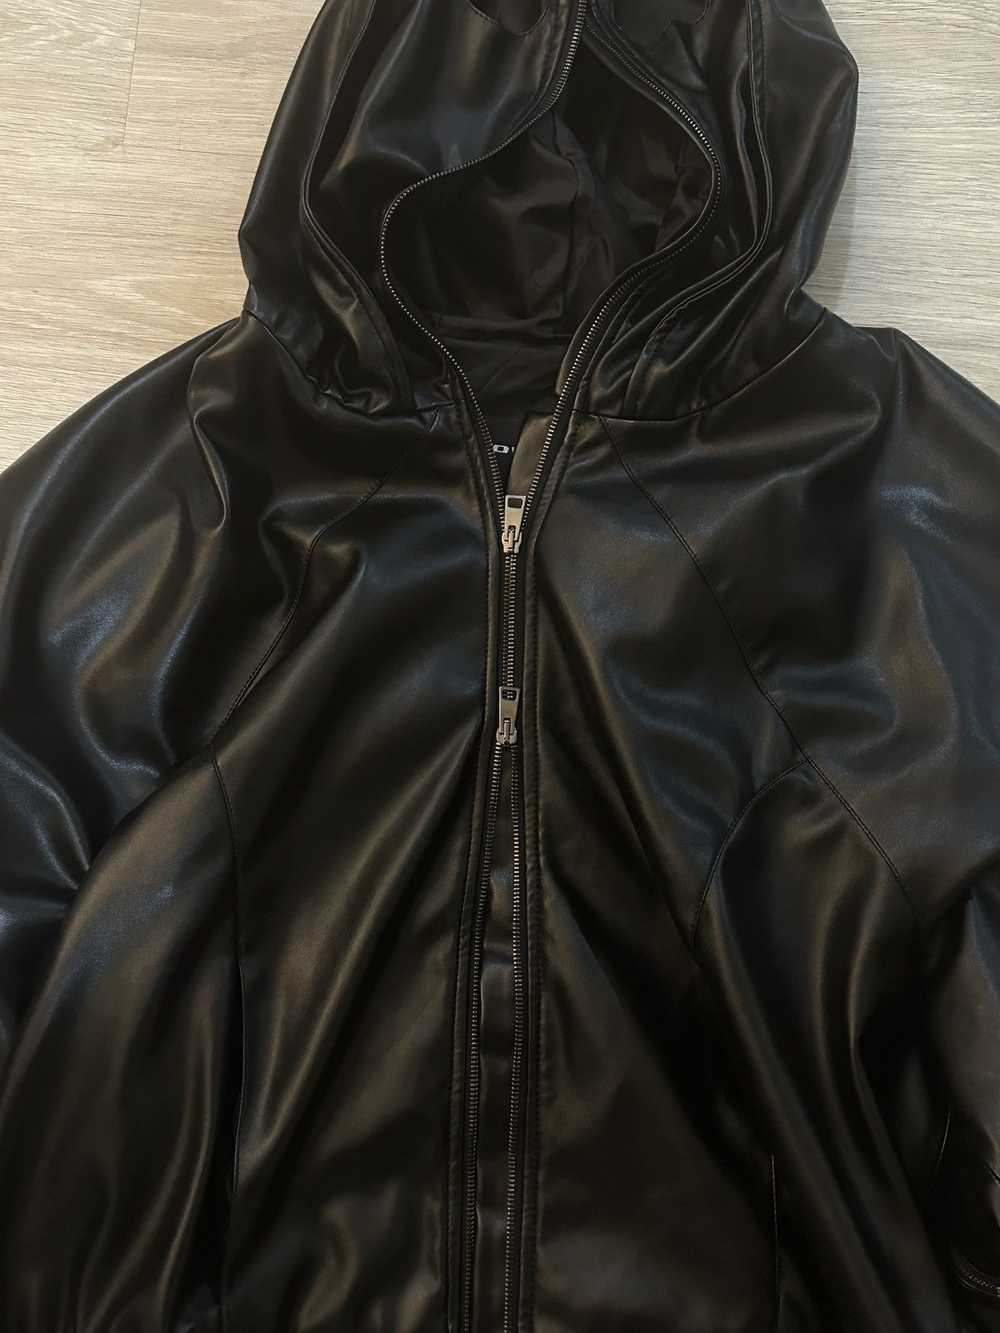 Mowalola Faux Leather Gimp Jacket - image 4